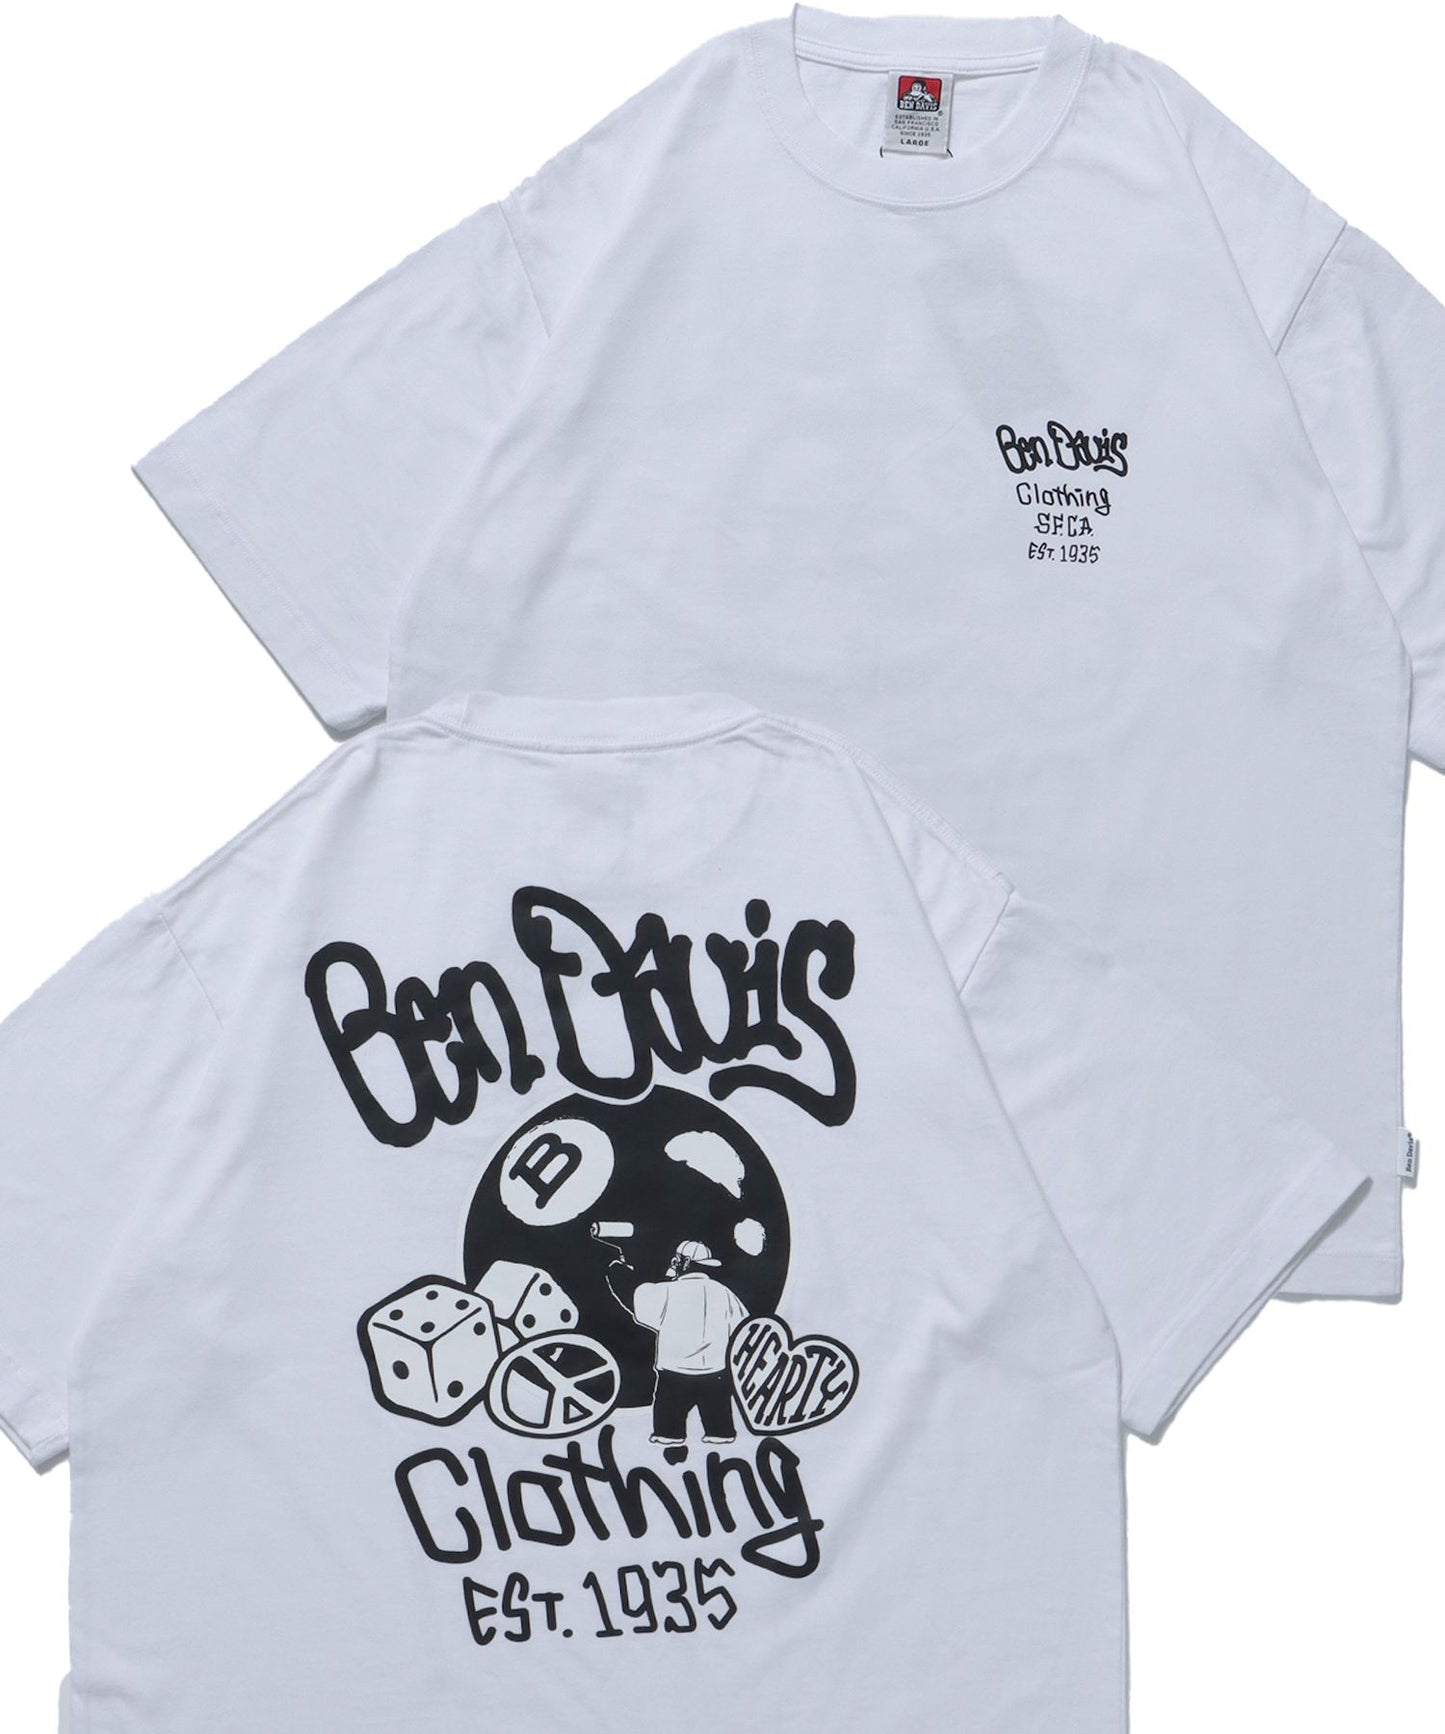 【BEN DAVIS(ベンデイビス)】BALL ETC VNTG TEE / クルーネック 半袖Tシャツ ハッピー モチーフ バップリント 胸ワンポイント Tシャツ 8ボール ホワイト